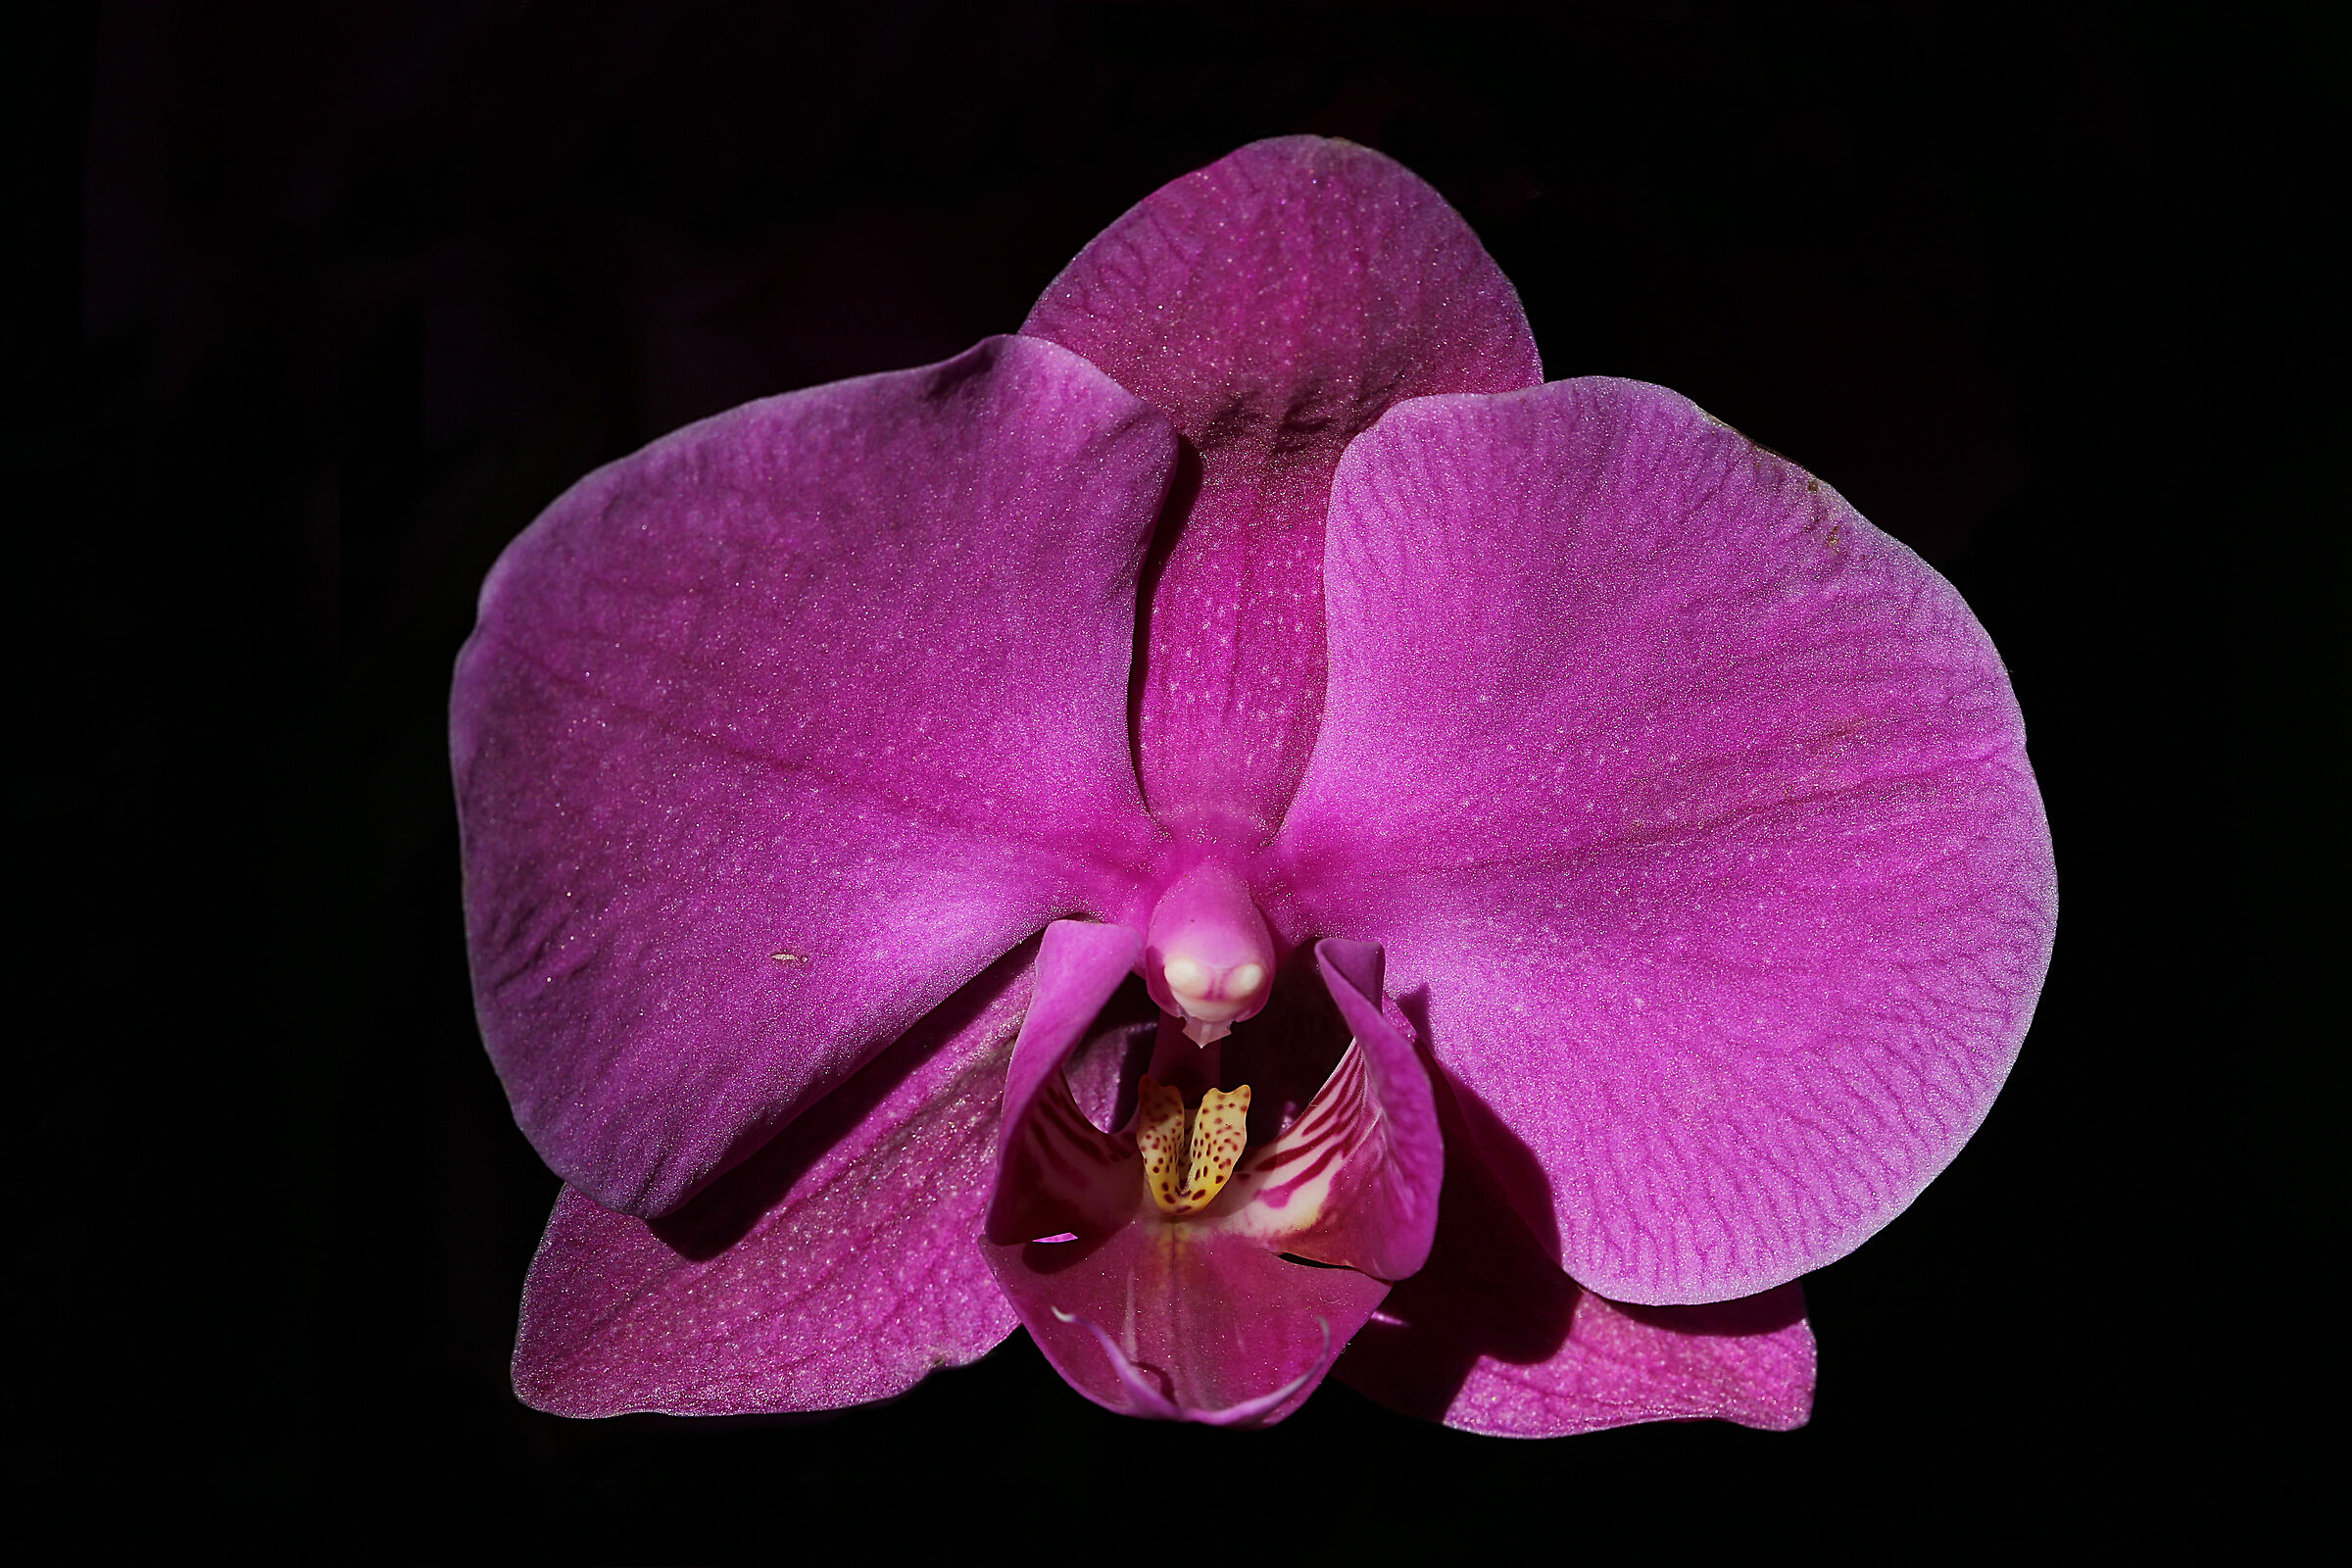 Orchid (km0 shots)...